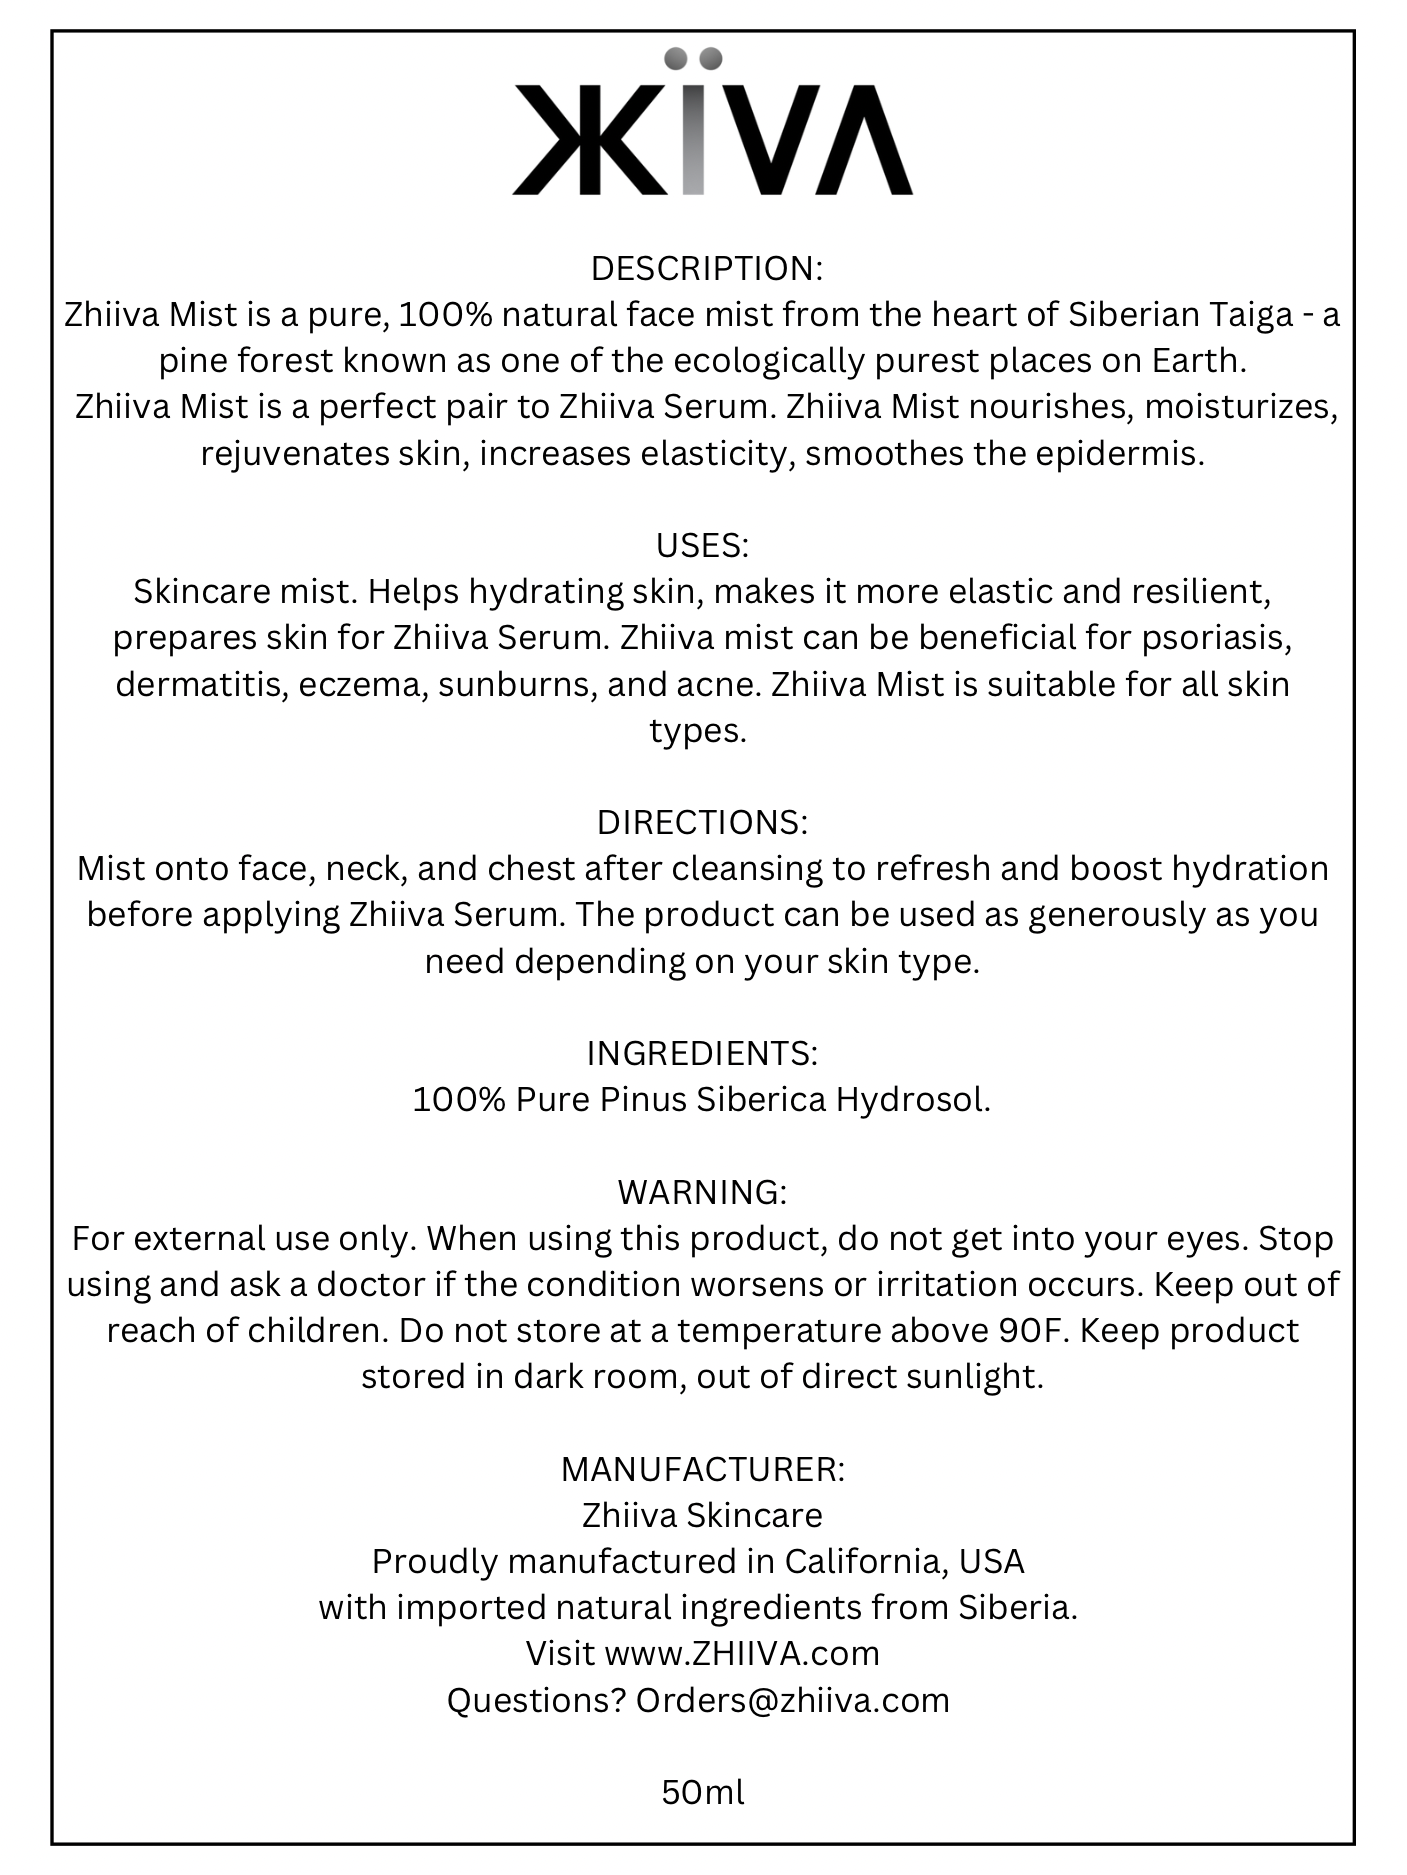 Zhiiva Serum 30ml + Zhiiva Mist 50ml Duo - Natural, Organic, Pure, Chemistry-free, skincare mist serum